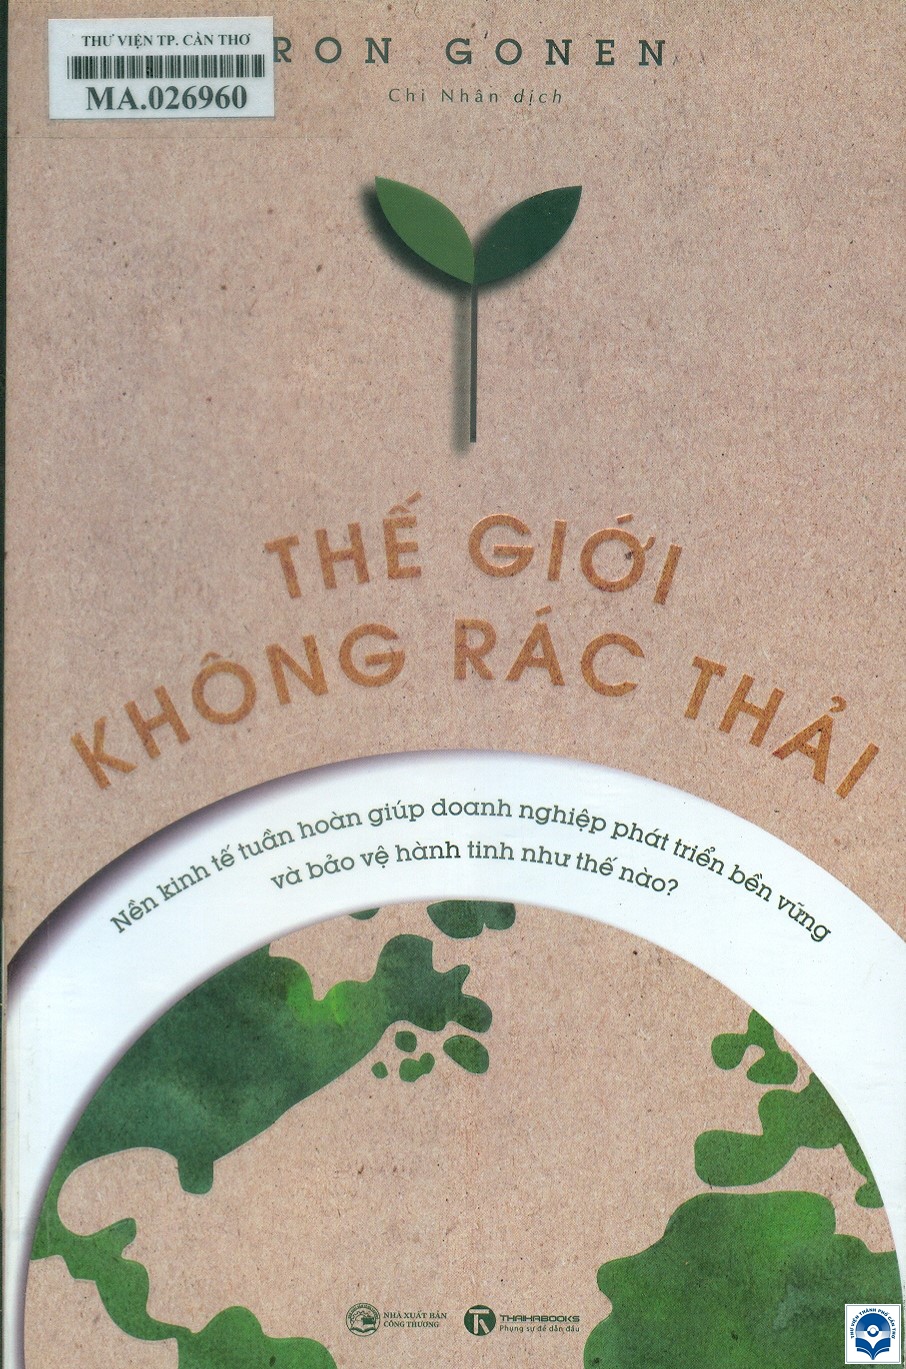 The gioi khong rac thai